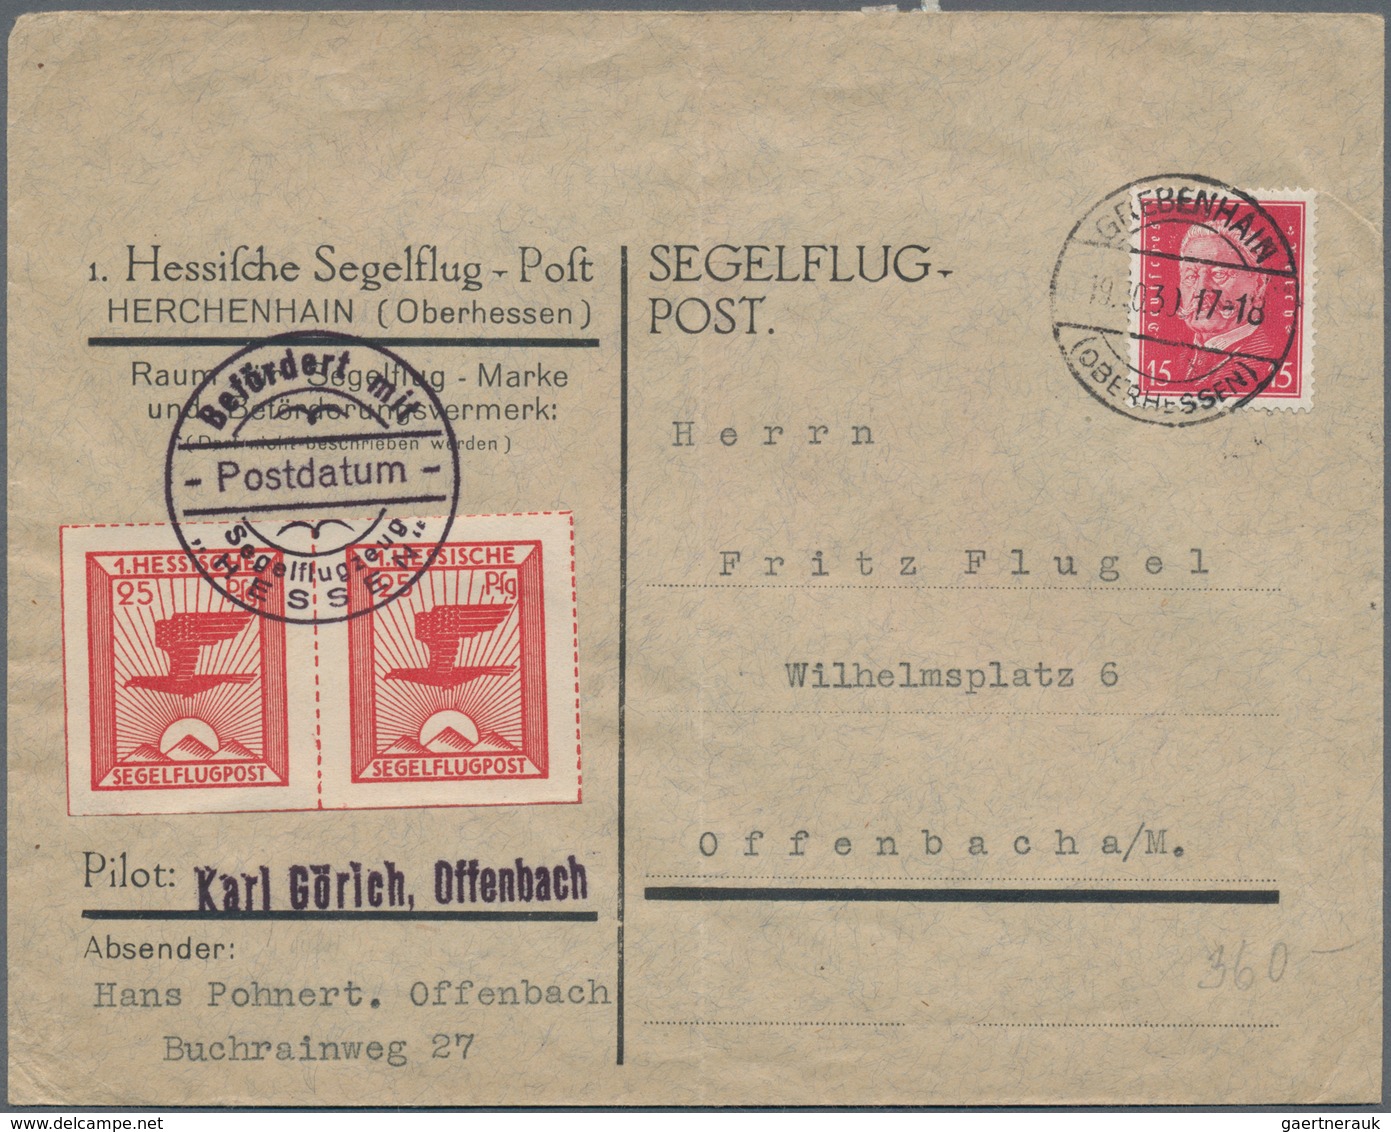 Deutsches Reich: 1912/1938 (ca.), schöner Posten von knapp 50 Belegen, dabei seltene Frankaturen wie